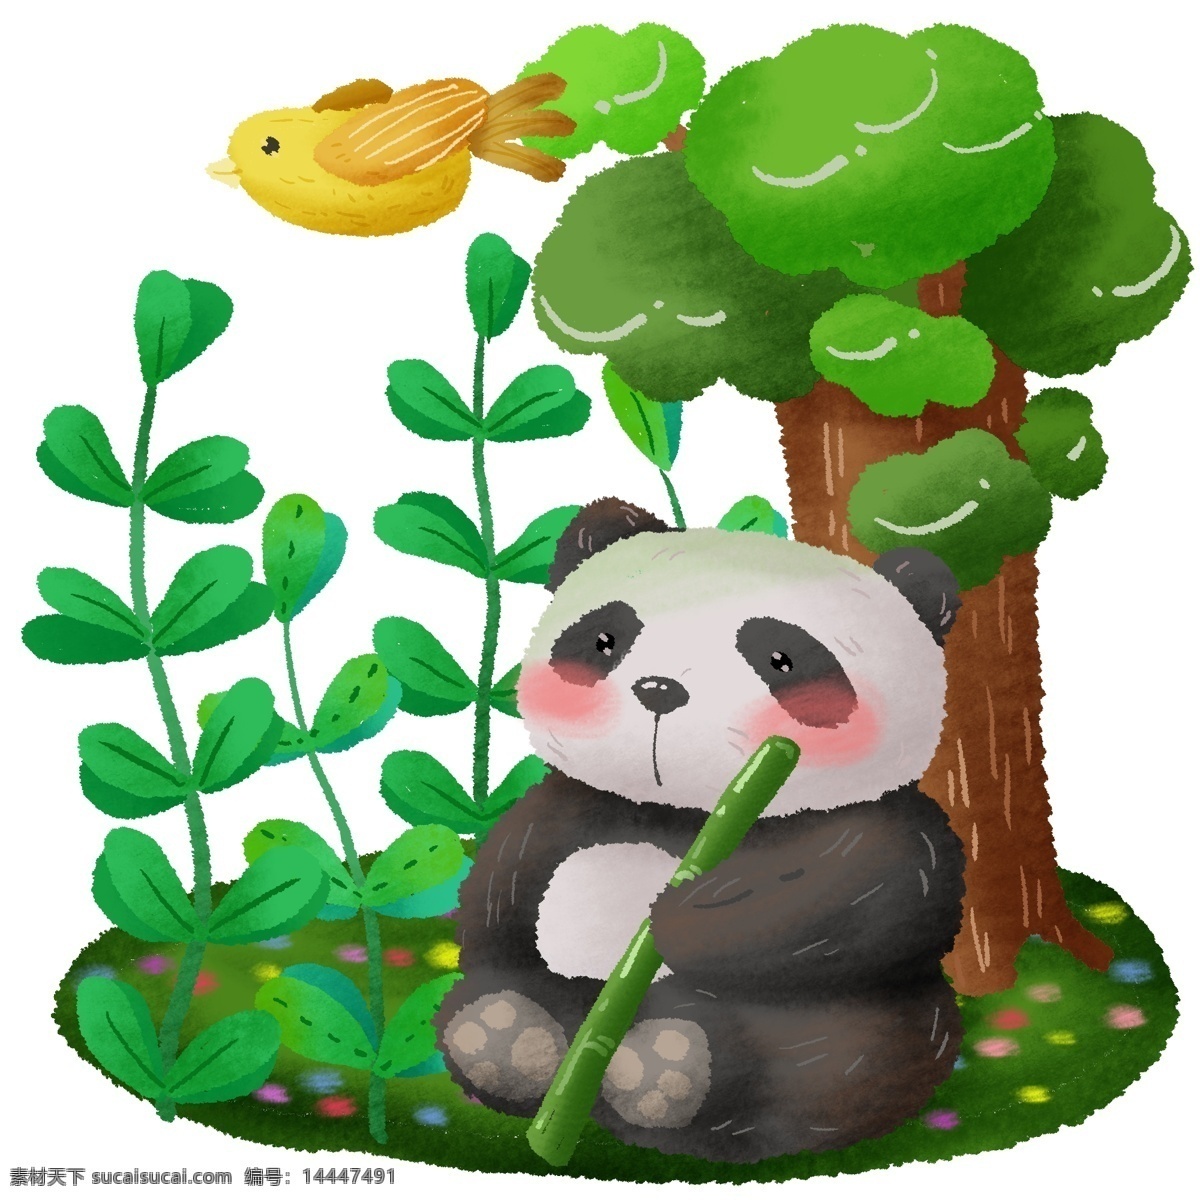 手绘 可爱 动物 大熊猫 森林 小鸟 熊猫 国宝 珍惜动物 环保 爱护 绿色 植物 绿植 大树 花草 草 黄色 黑白 熊